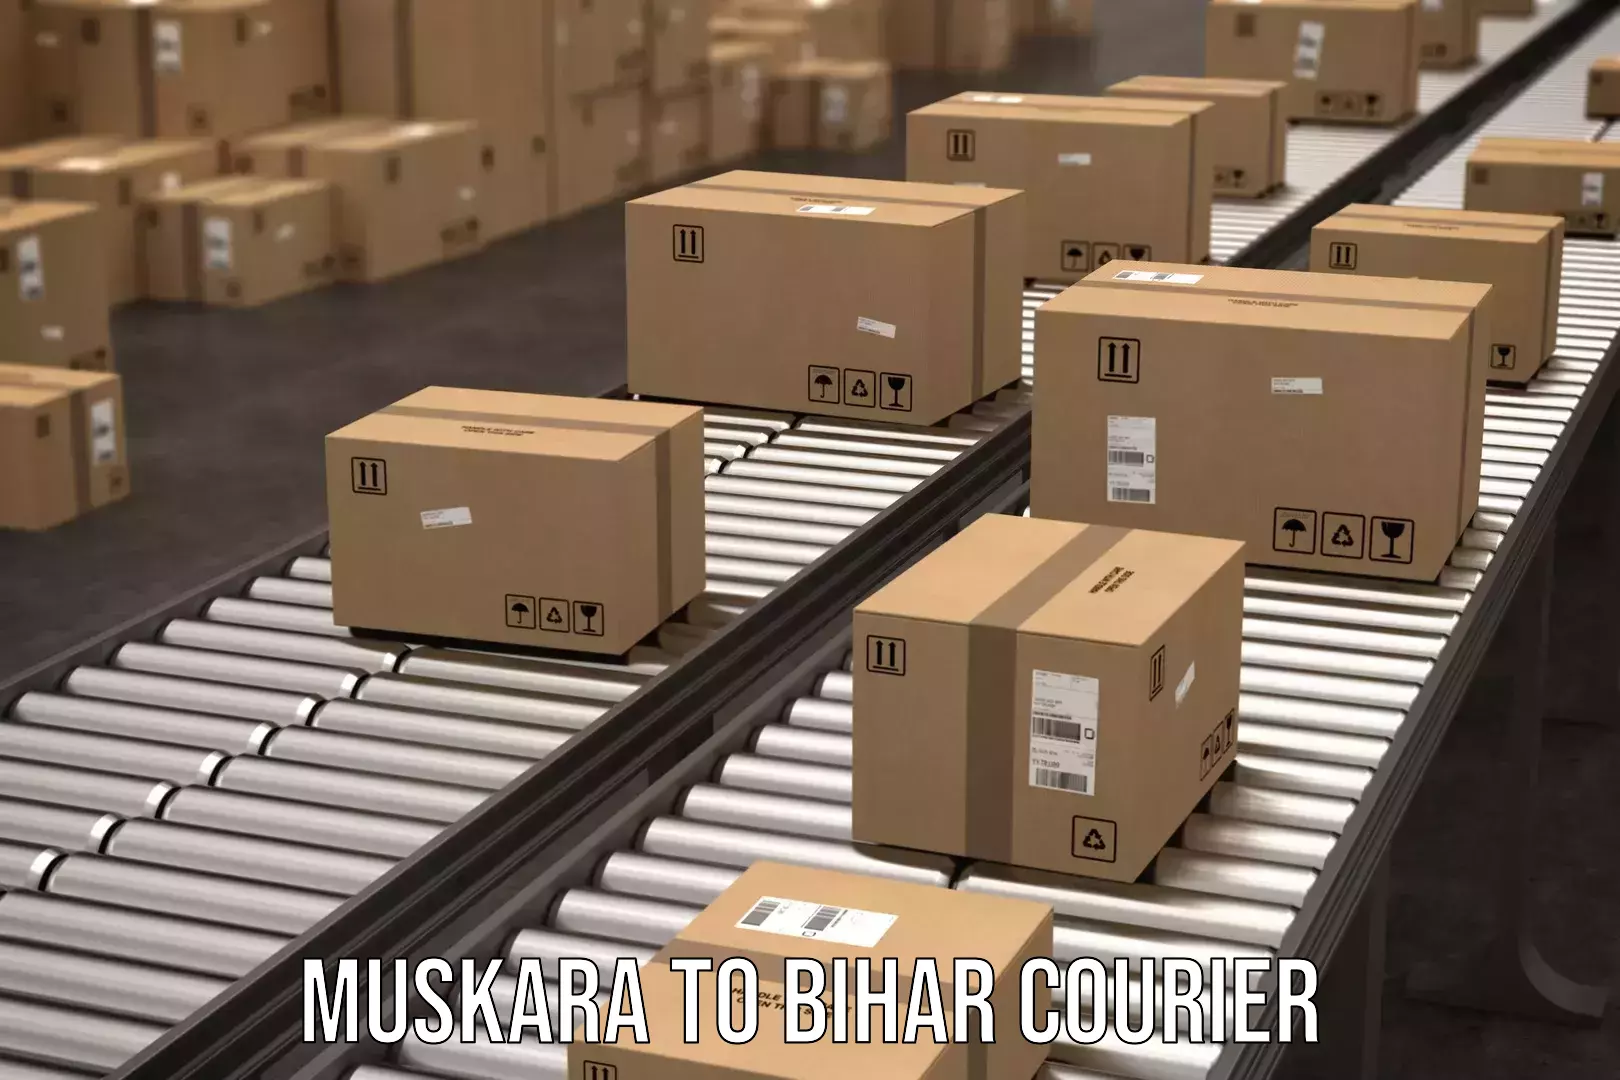 Supply chain efficiency Muskara to Mairwa